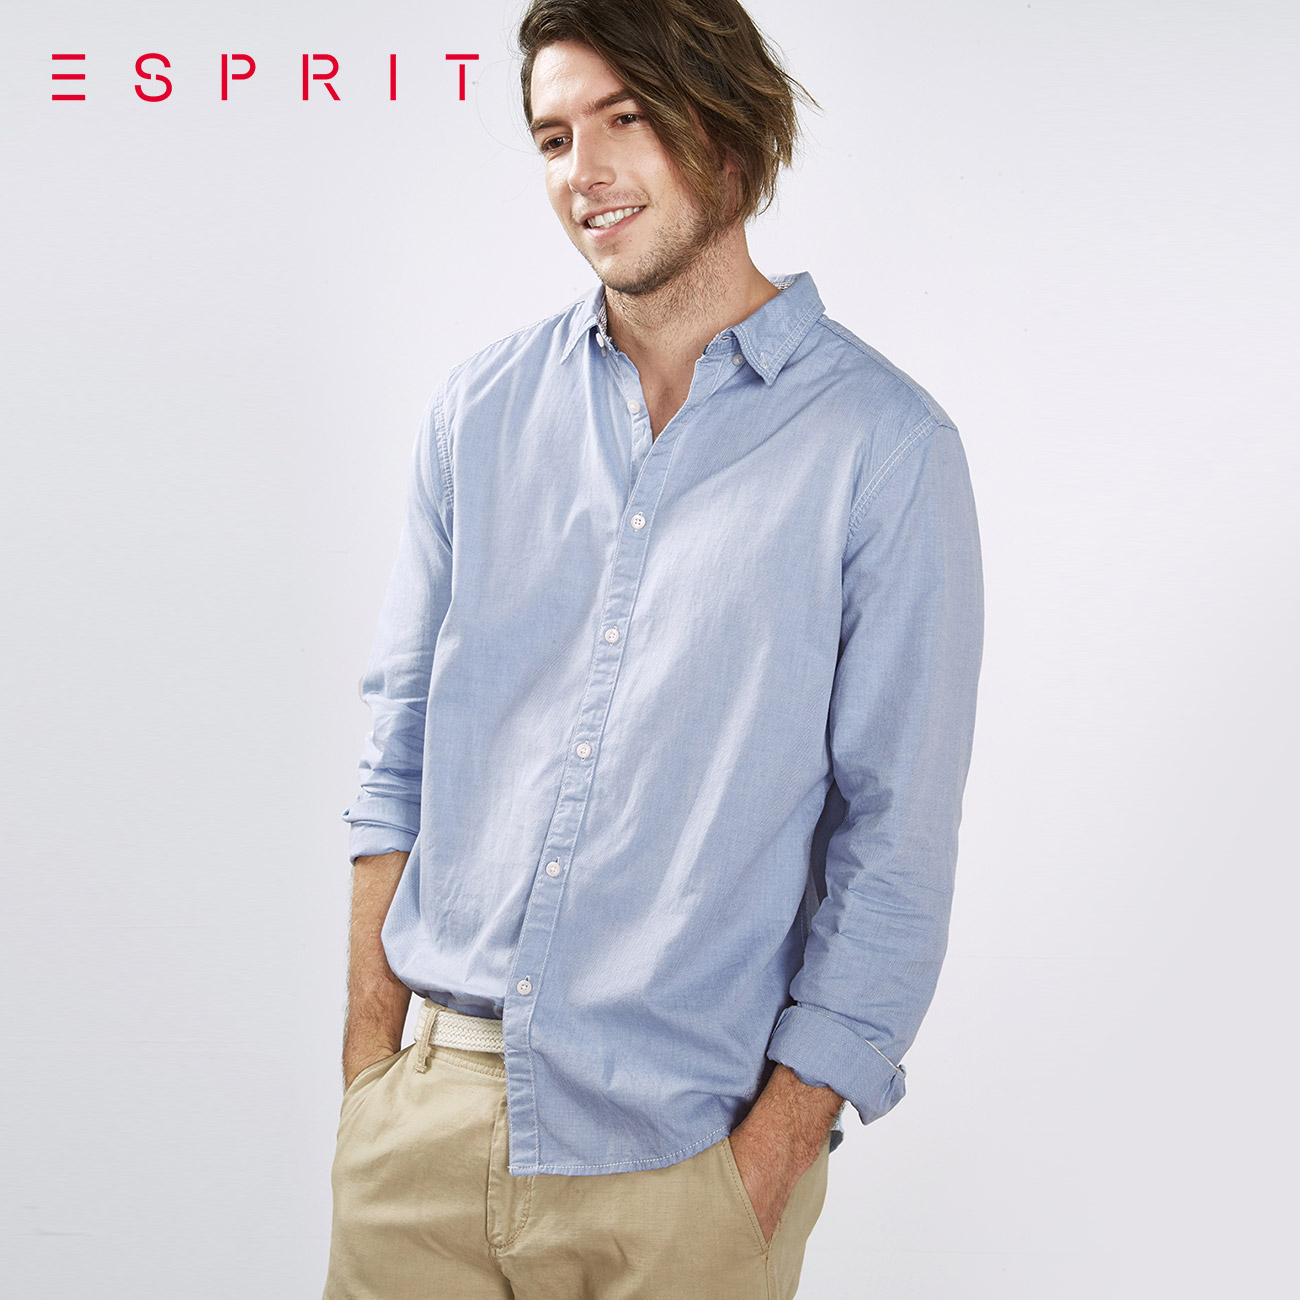 ESPRIT男士2016冬时尚潮流纯色长袖衬衫-106CC2F003产品展示图1